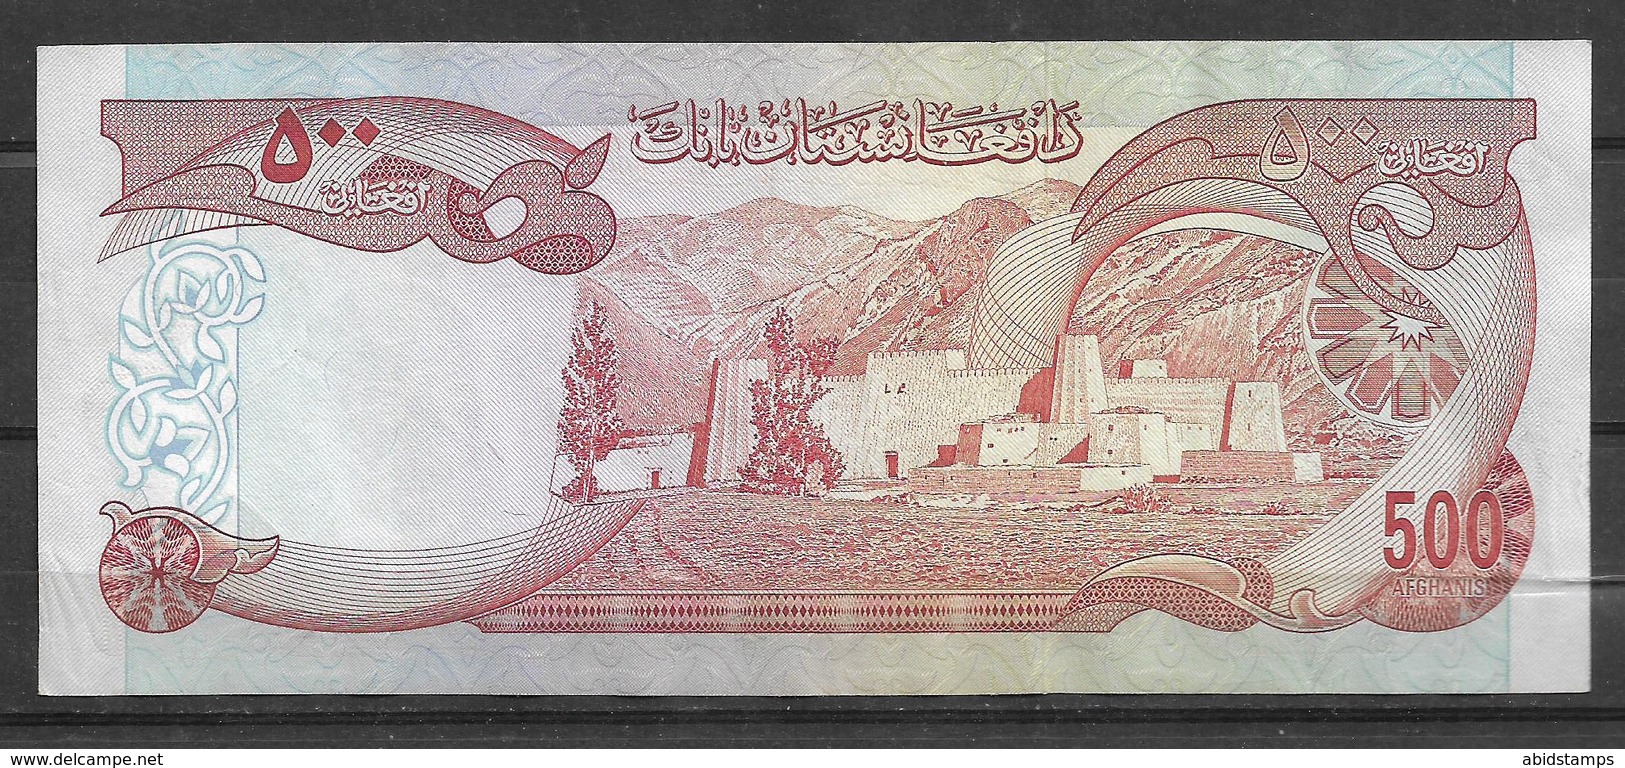 AFGHANISTAN USED BANKNOTE 500 AFGHANI DAWOOD - Afghanistan